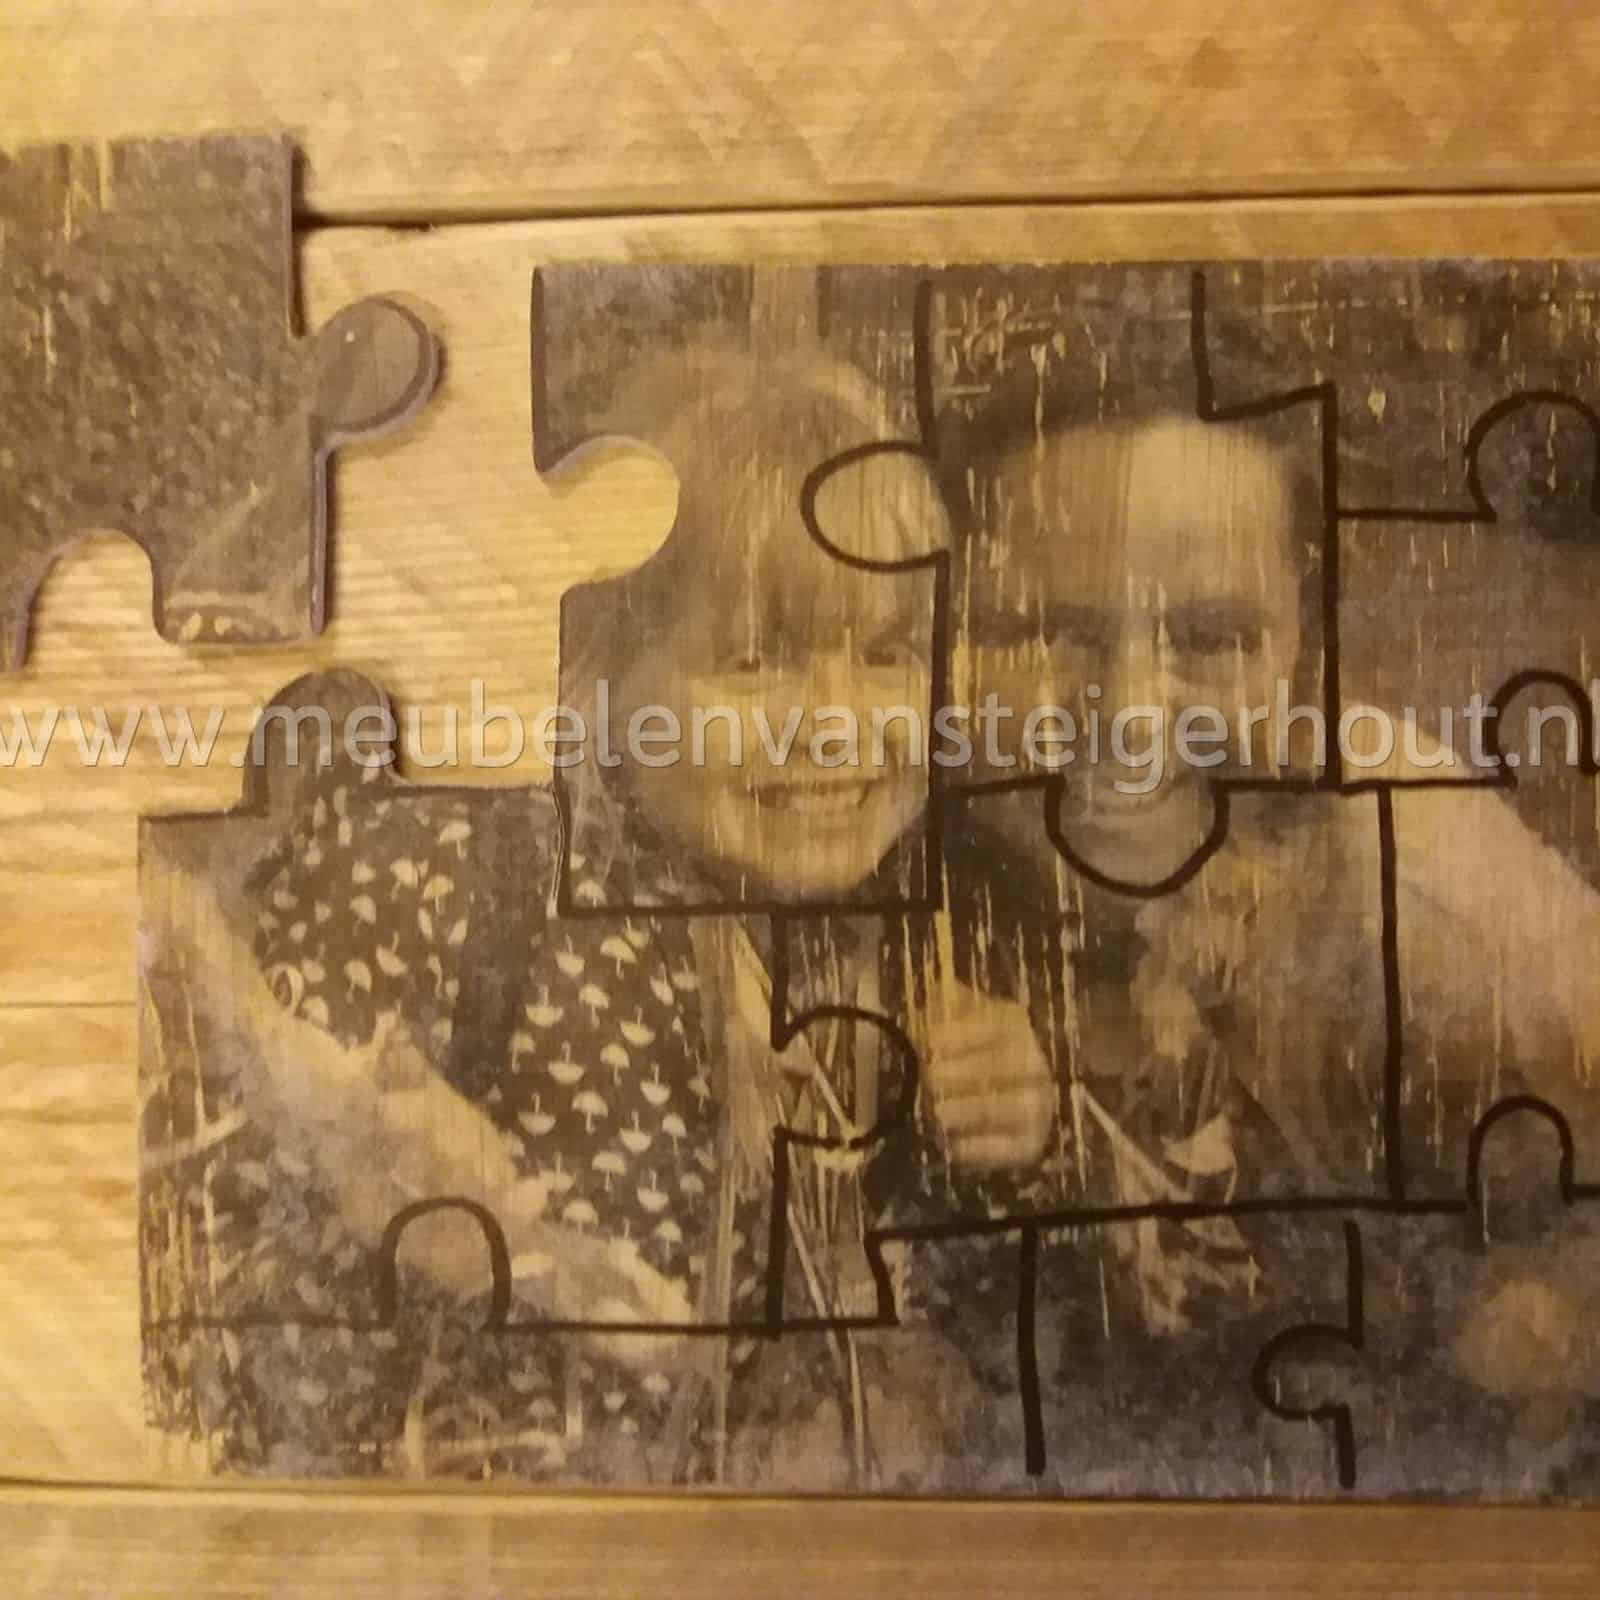 Afwijzen Hoe extract Workshop maak je eigen houten puzzel | Meubelen van Steigerhout